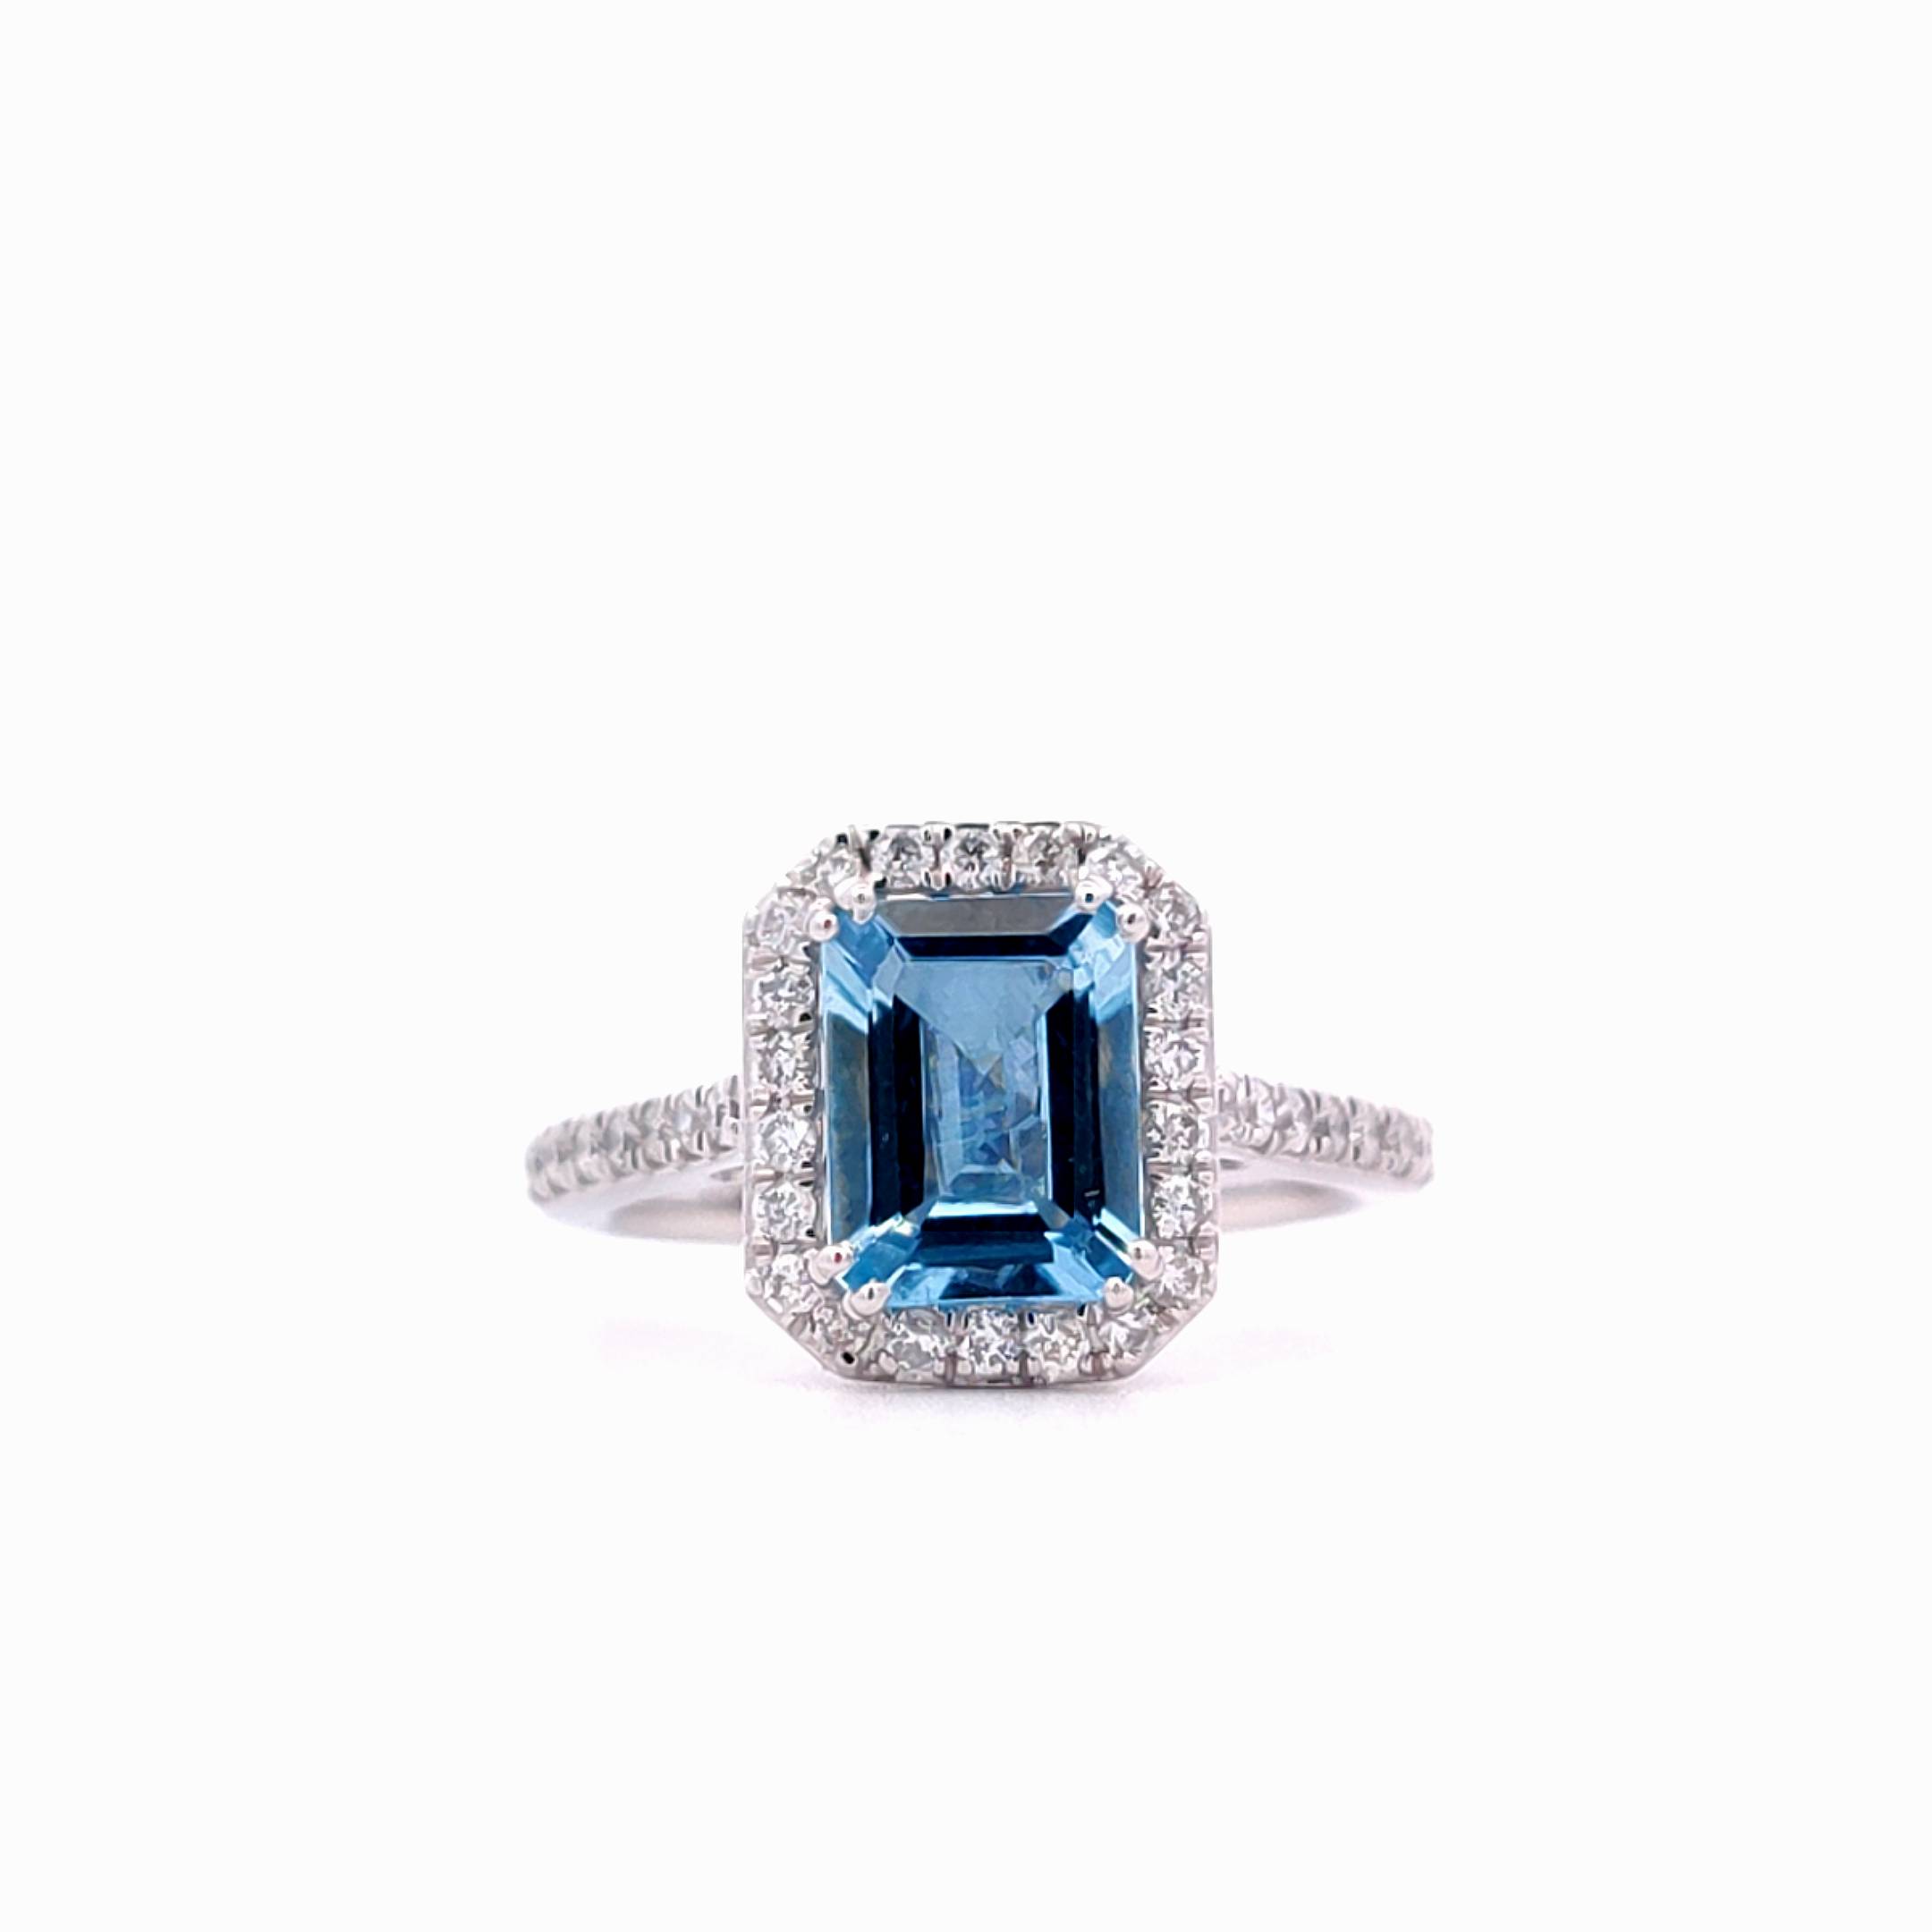 1.78ct Aquamarine and 0.49ct Brilliant Diamond Halo Design Ring in Platinum